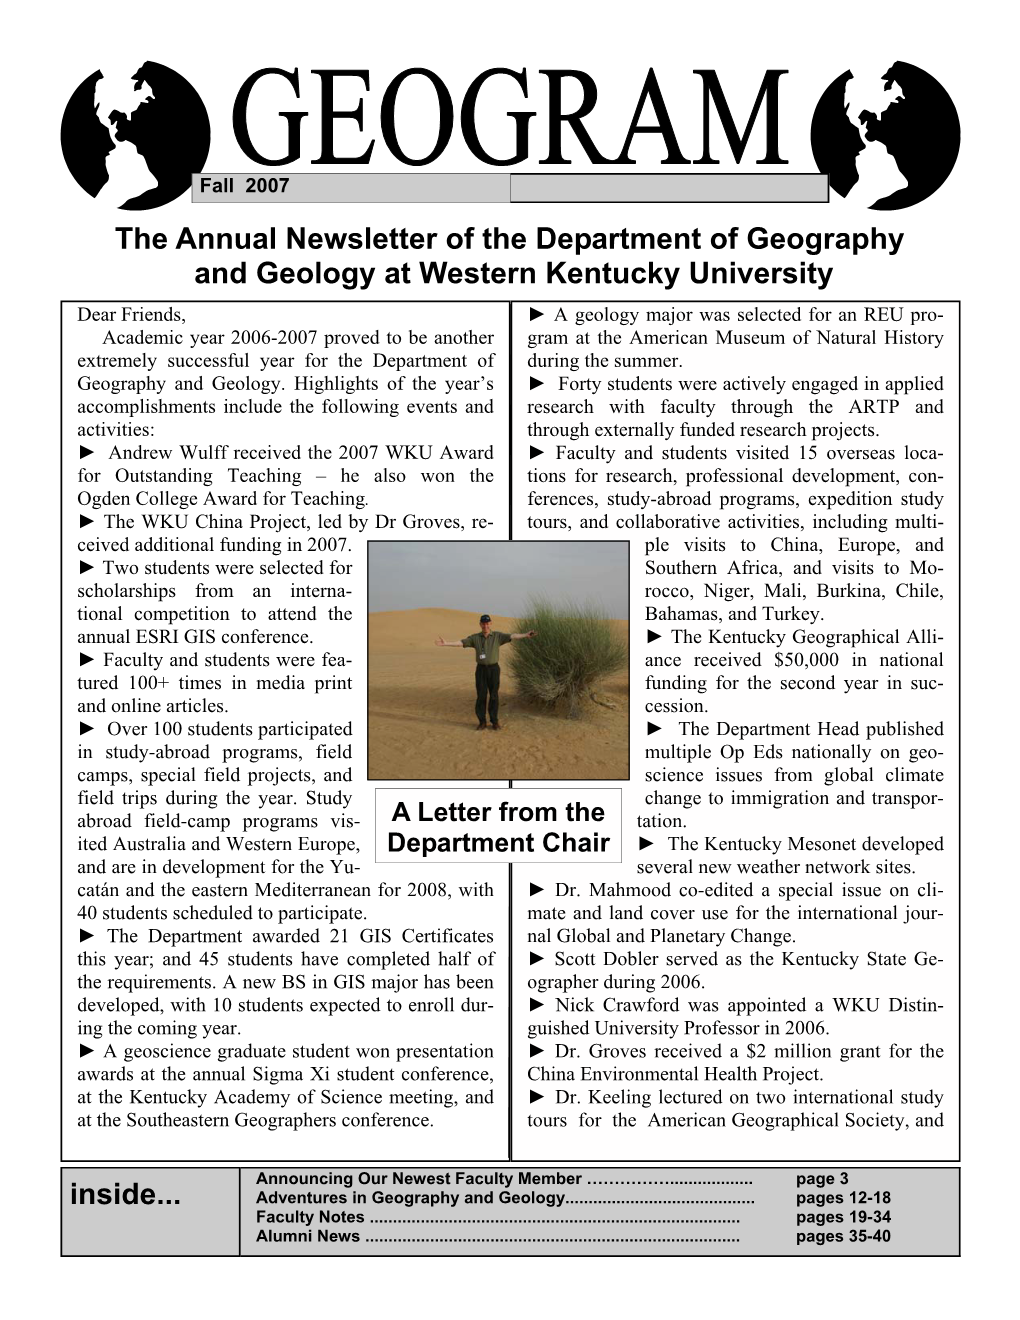 GEOGRAM 2007 Edition (Adobe PDF)